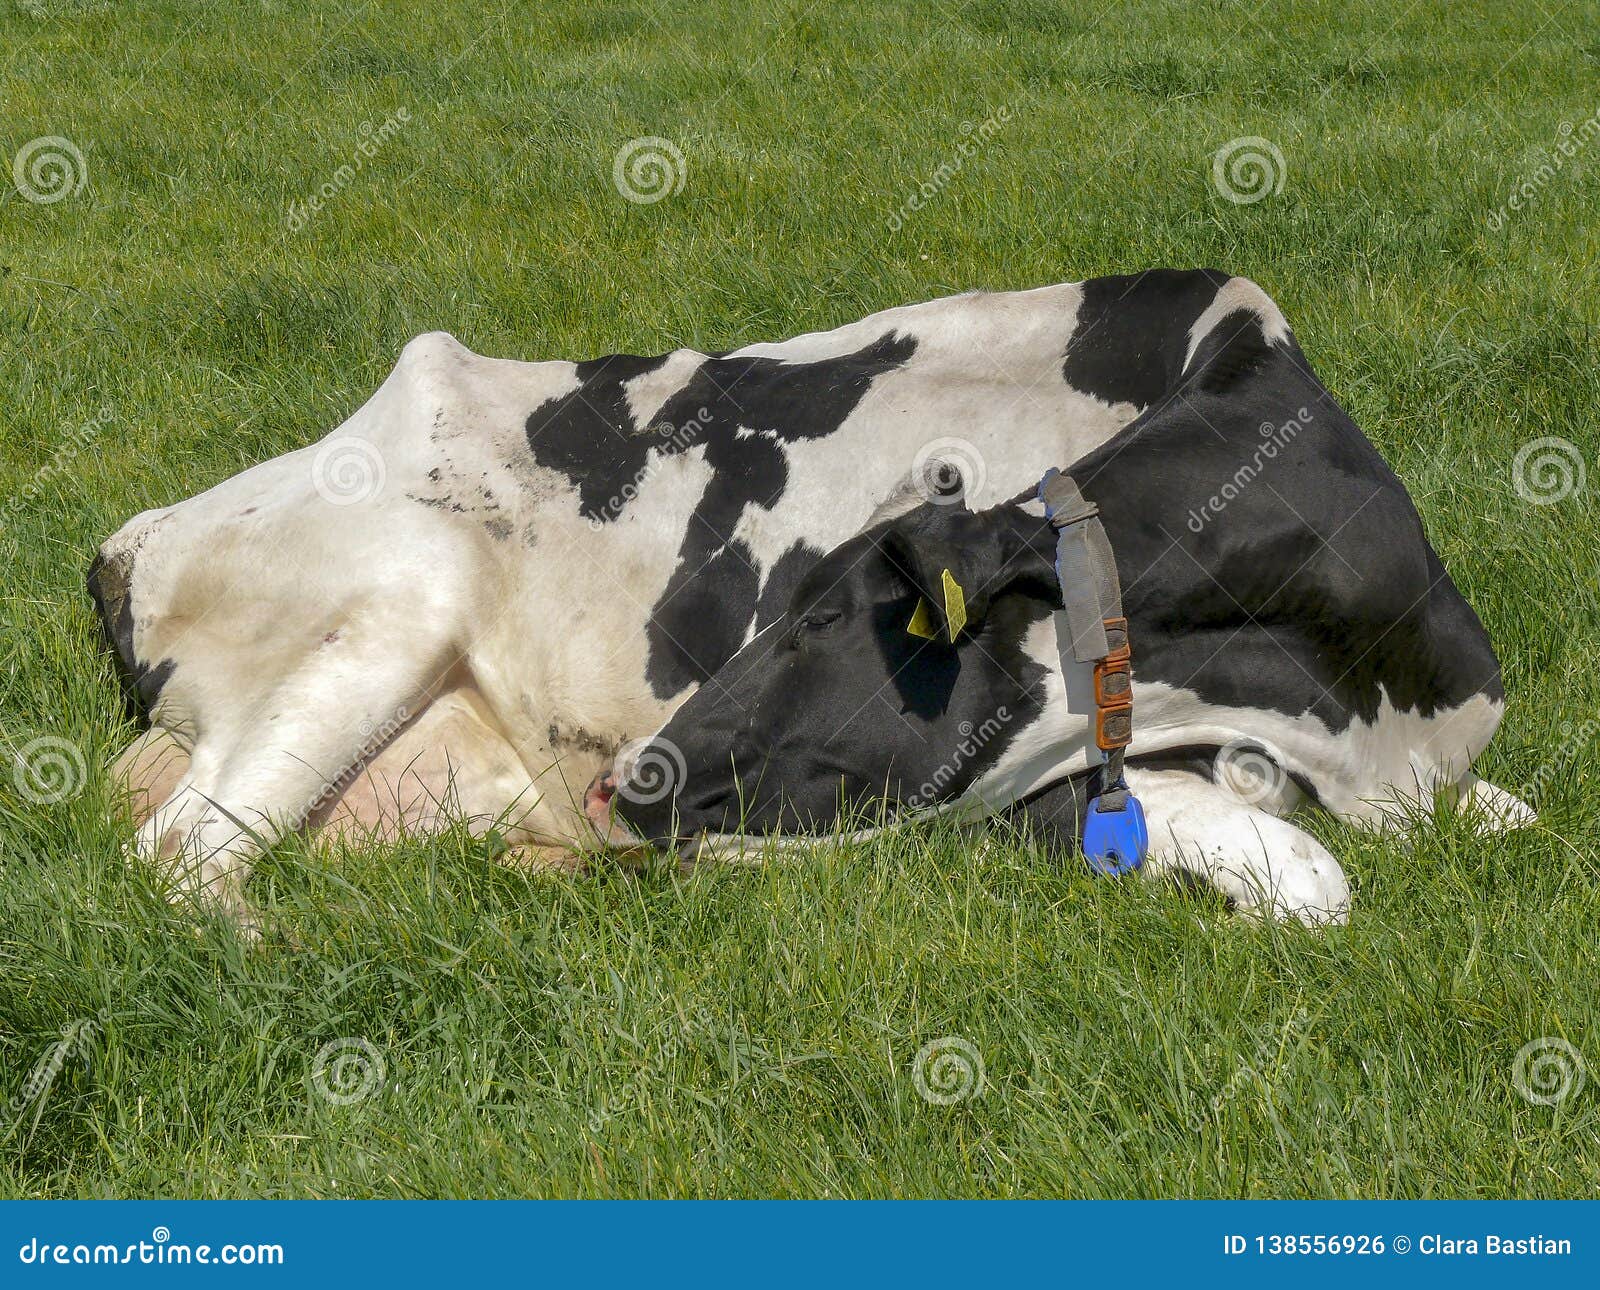 牛的睡姿图片,睡牛图,马的睡姿图片_大山谷图库